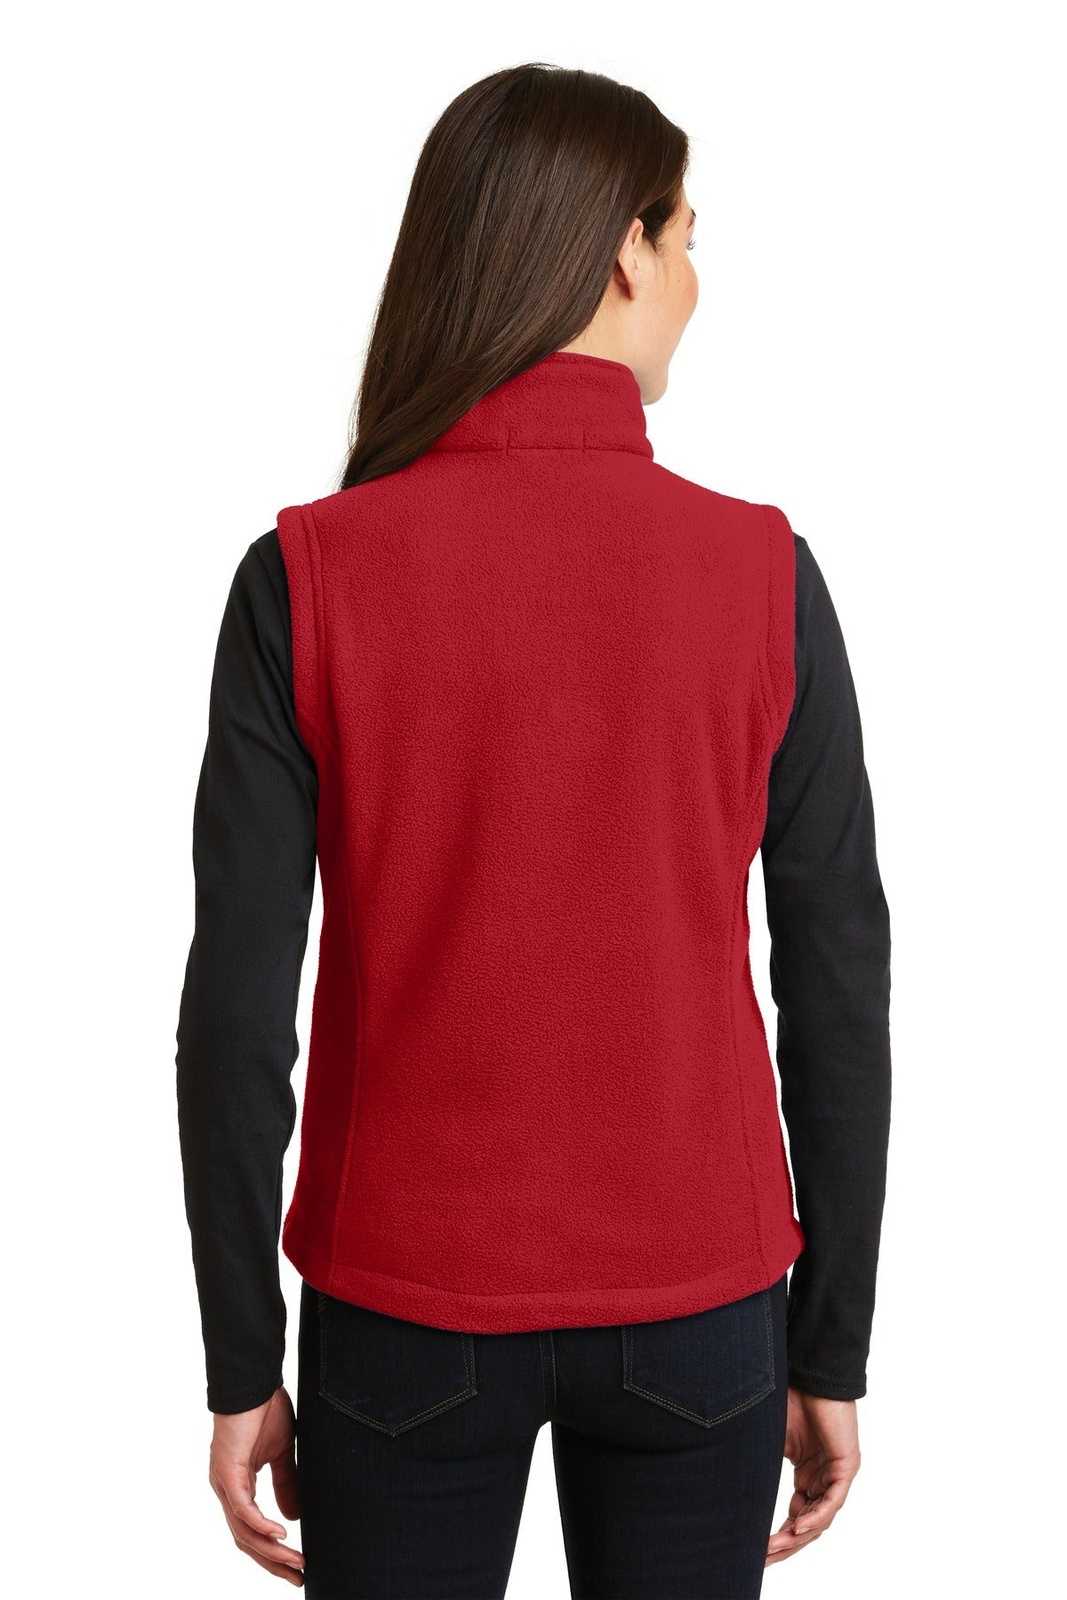 Port Authority L219 Ladies Value Fleece Vest - True Red - HIT a Double - 2